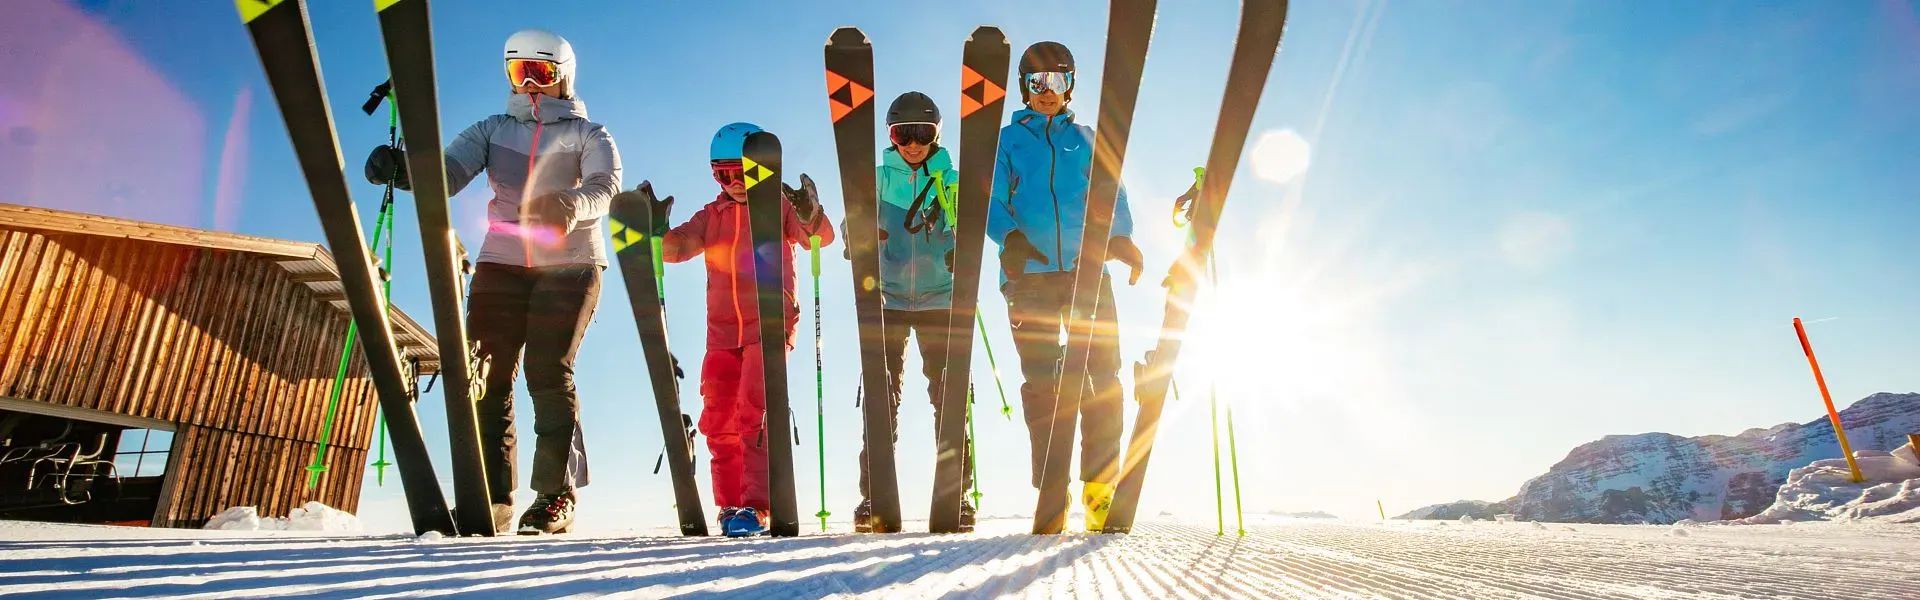 Kitzbüheler Alpen Ski Hero Familie Wallner legt Ski auf Piste c Daniel Gollner